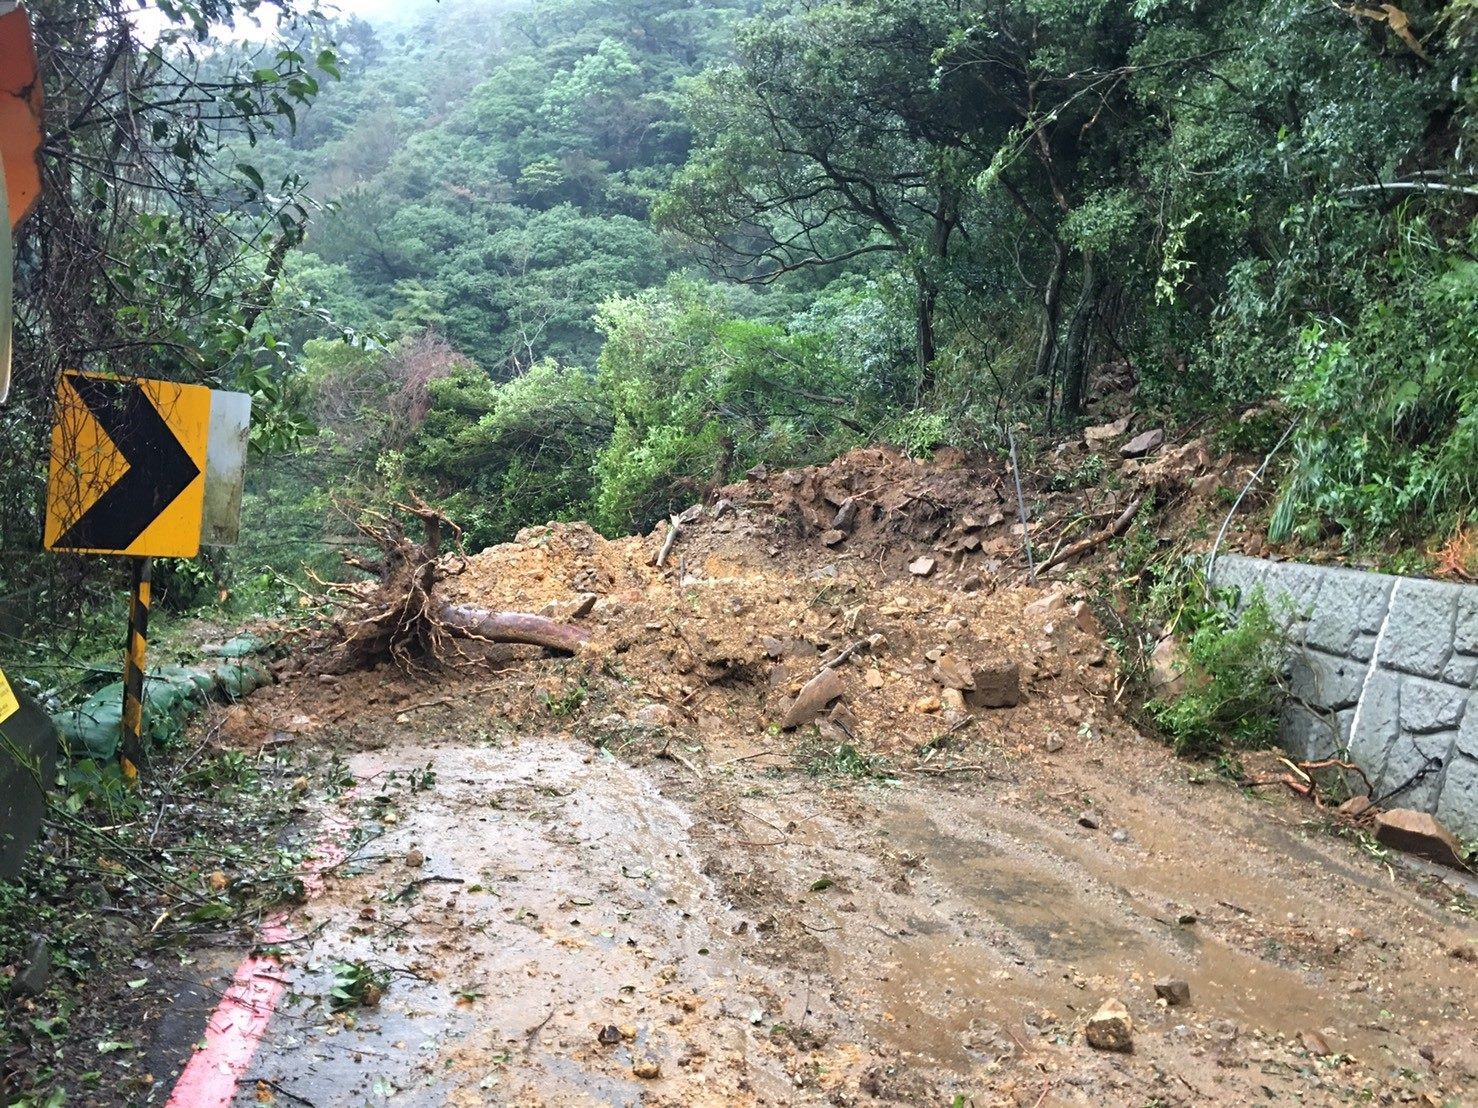 Landslide blocking the road